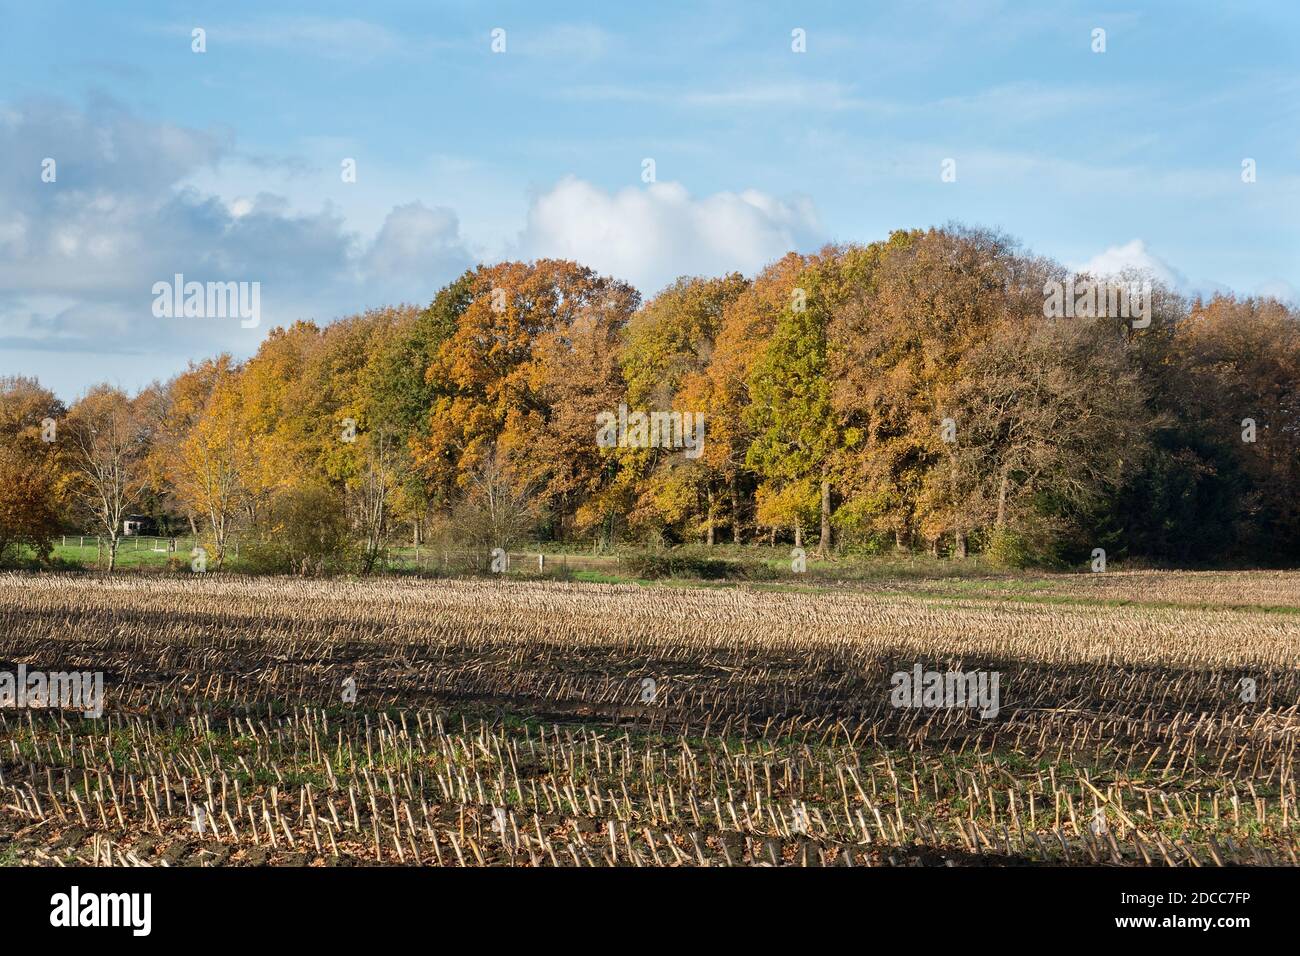 Campo in autunno con stoppie di mais dopo la raccolta, sullo sfondo una foresta in colori autunnali Foto Stock